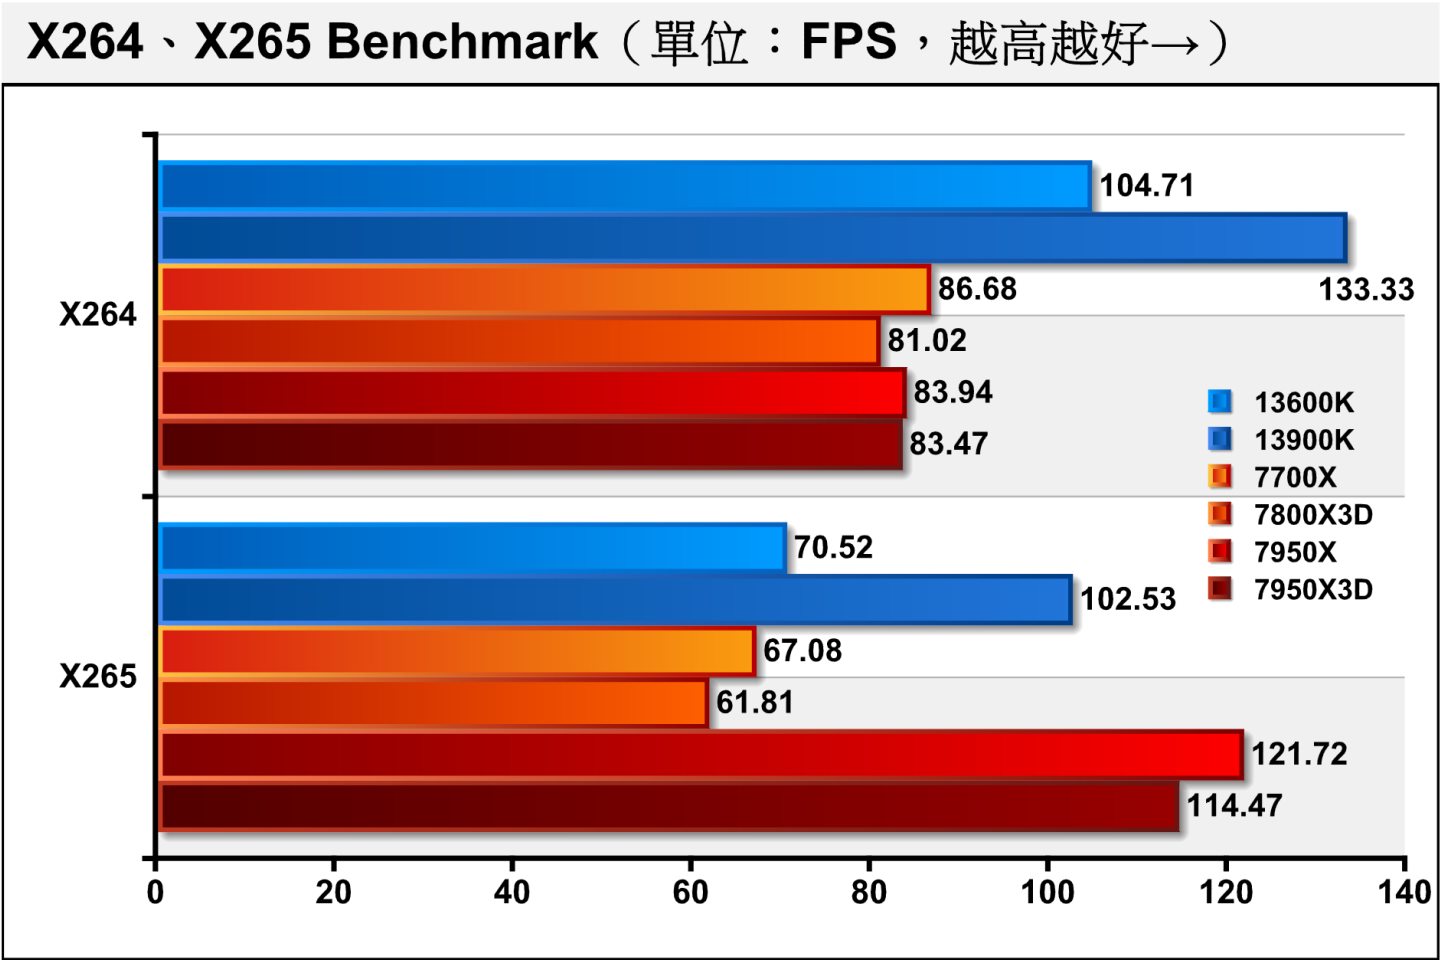 在x264 Benchmark、x265 Benchmark軟體編碼影片轉檔測試，7950X、7950X3D在x264編碼遇到Bug導致表現異常。至於7800X3D則以6.54%、7.85%的幅度落後於7700X。